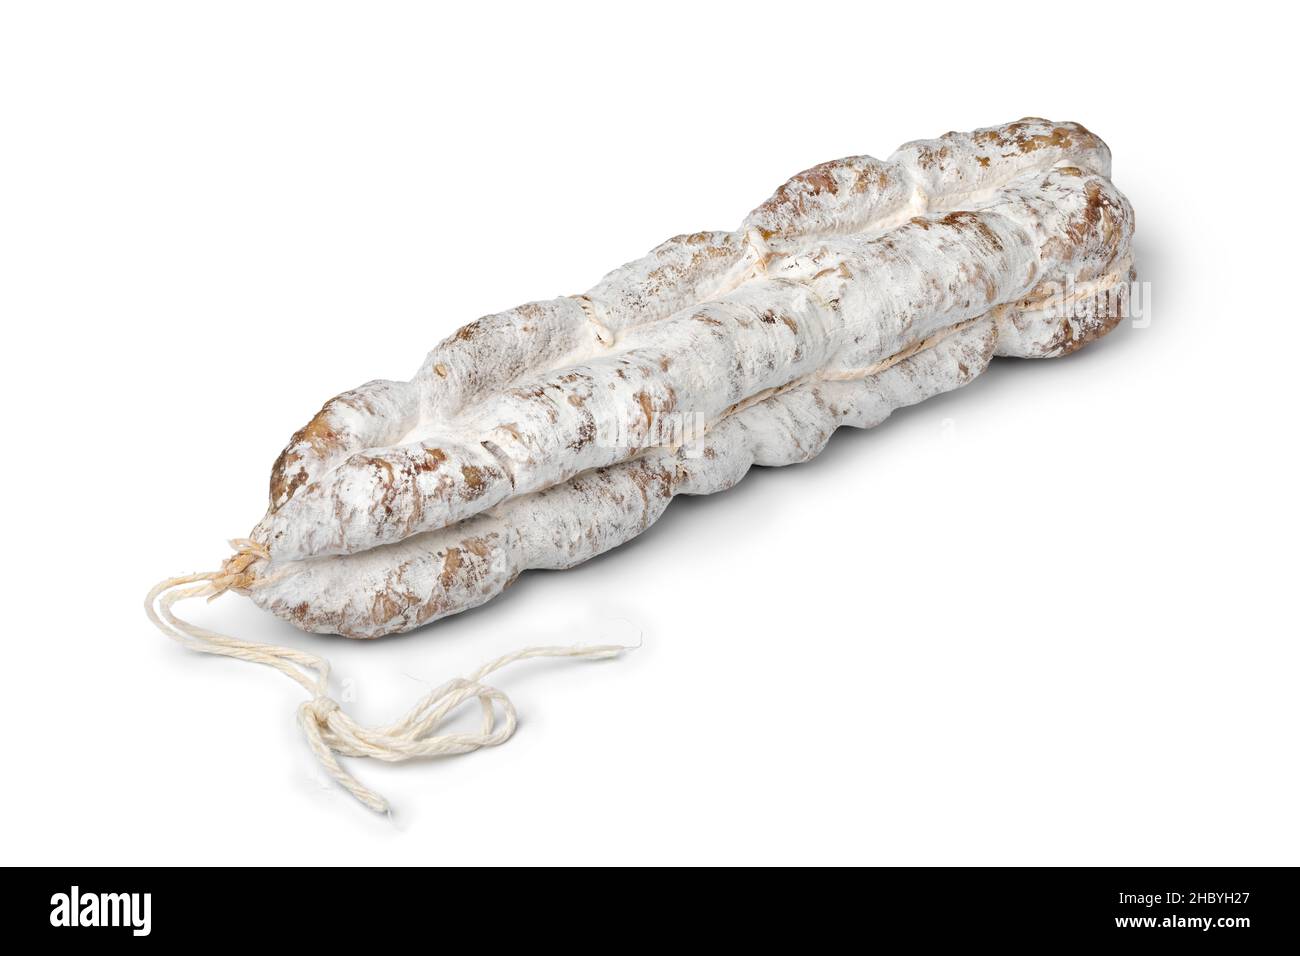 Singola salsiccia secca francese intera fatta a mano, saucisson sec, isolato su sfondo bianco Foto Stock